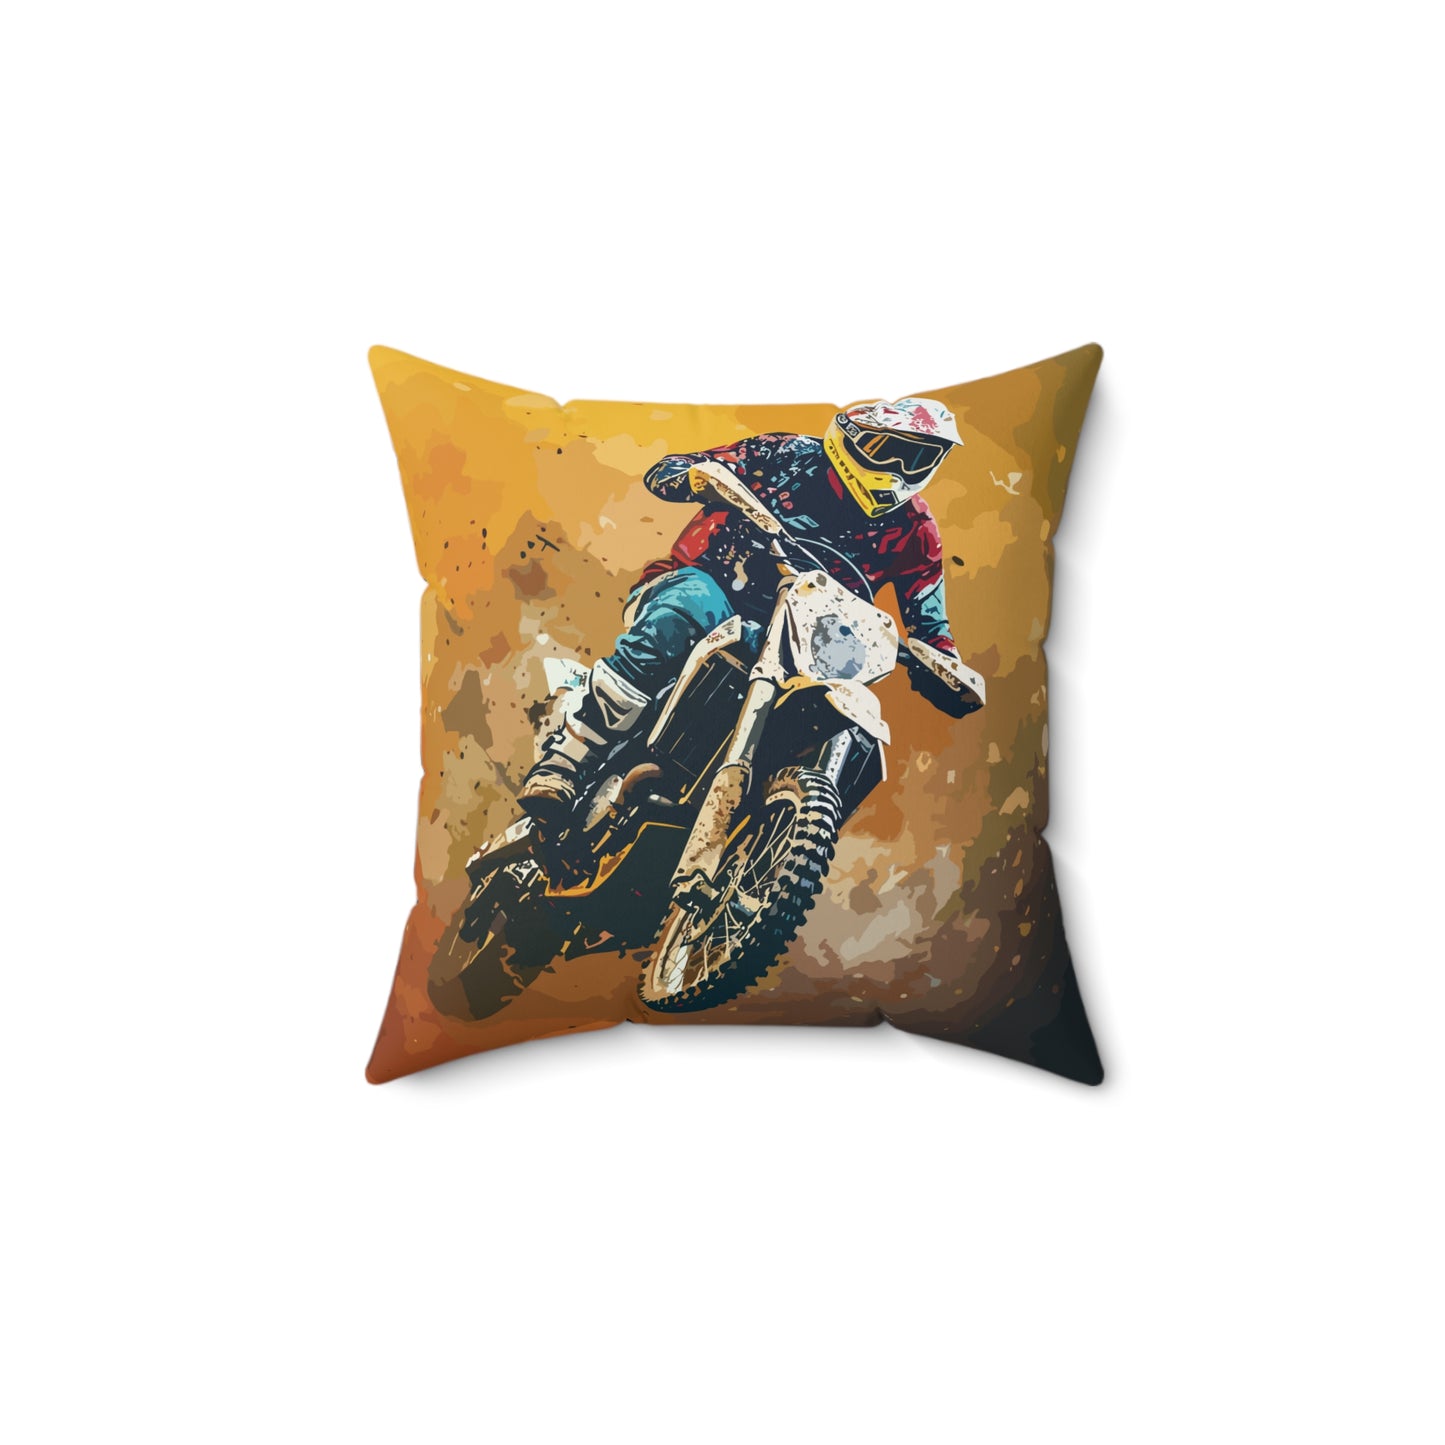 Dirt Bike Rider | Throw Pillow